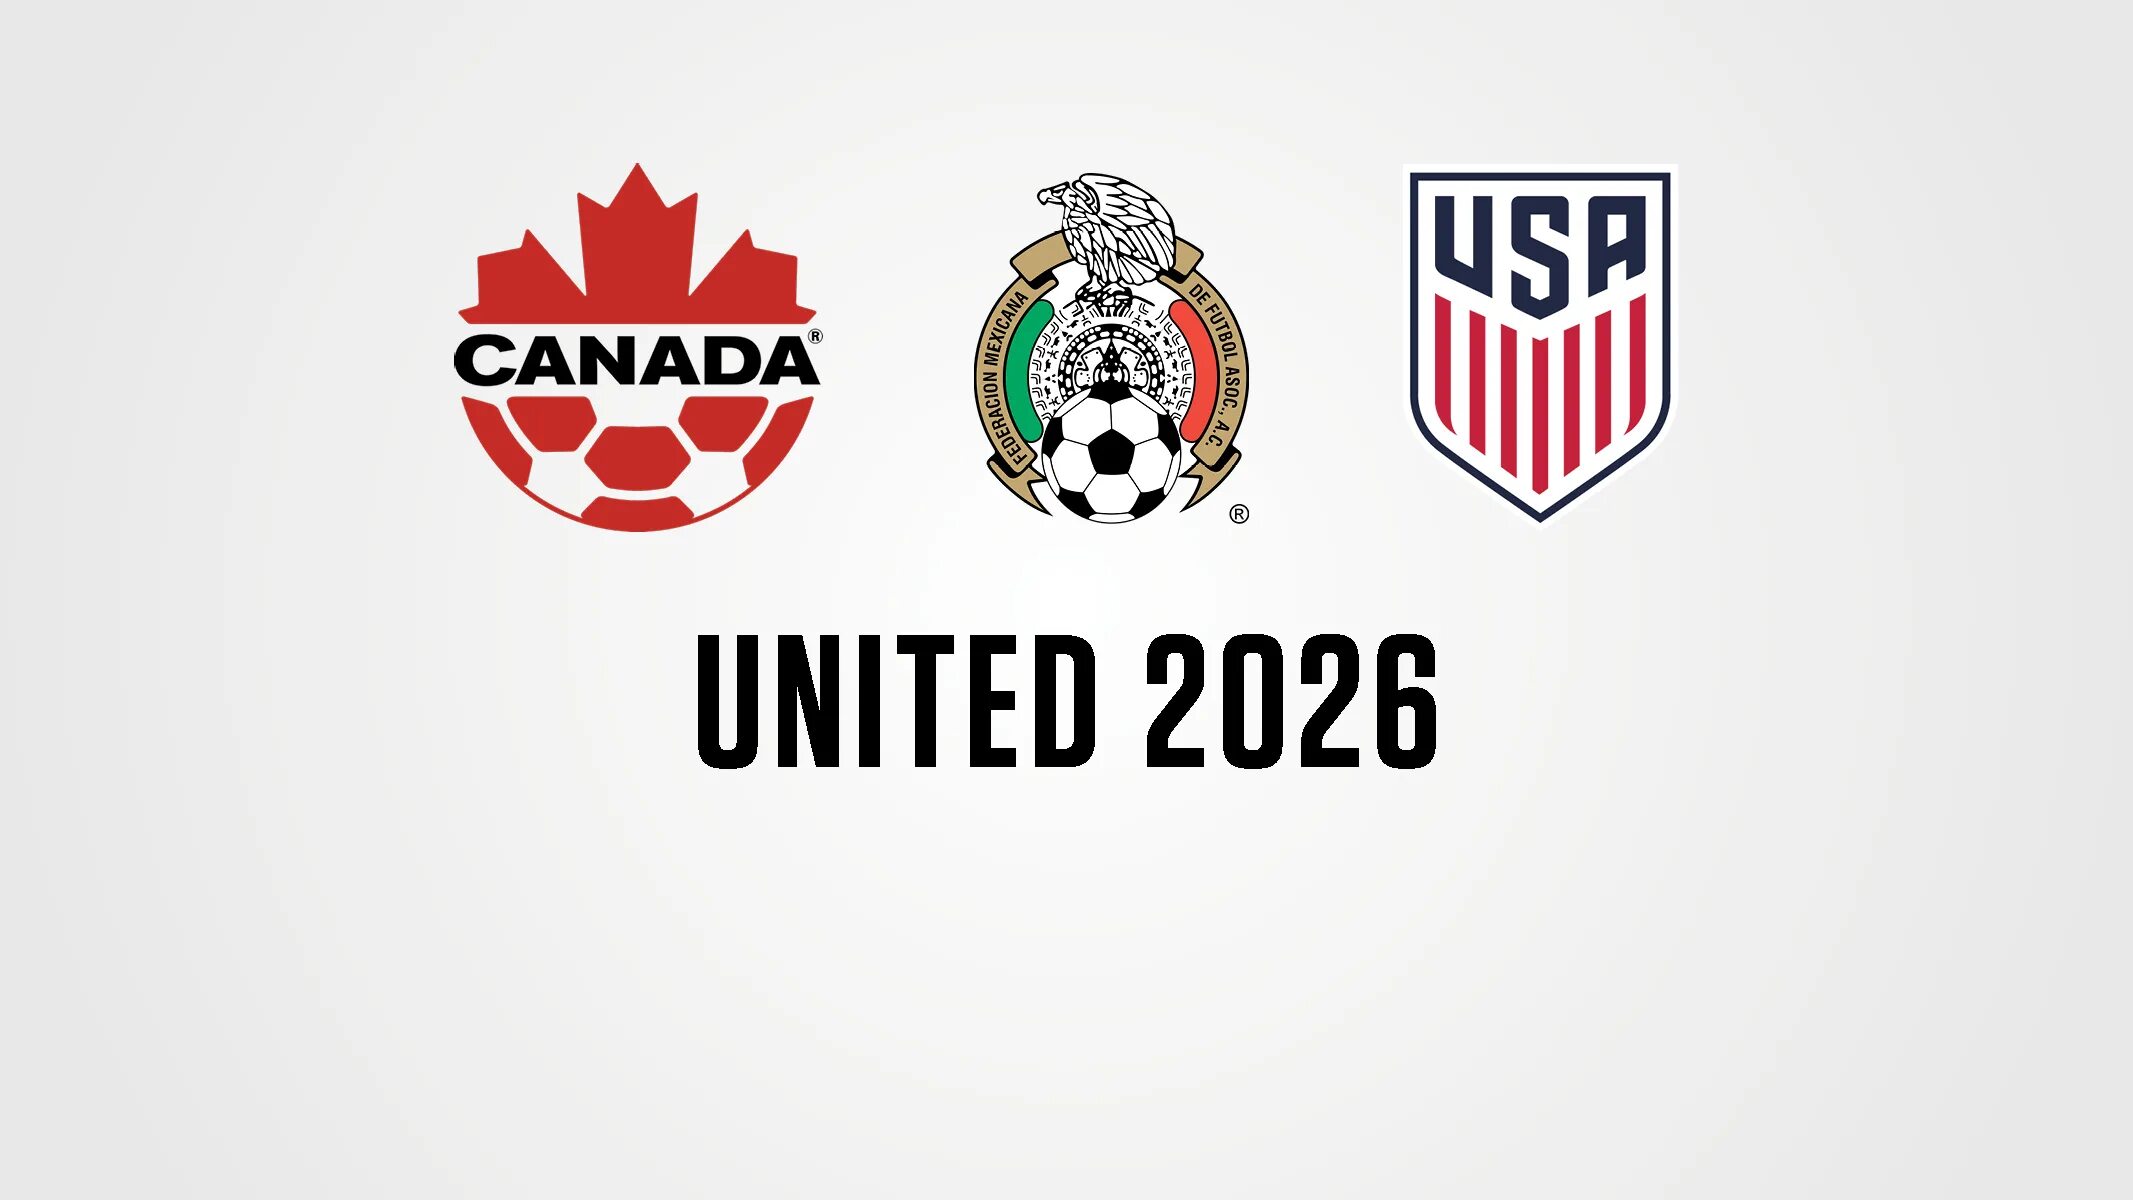 Сша 2026. United 2026. United 2026 FIFA World Cup bid. Логотип ЧМ 2026. United 2026 эмблема.